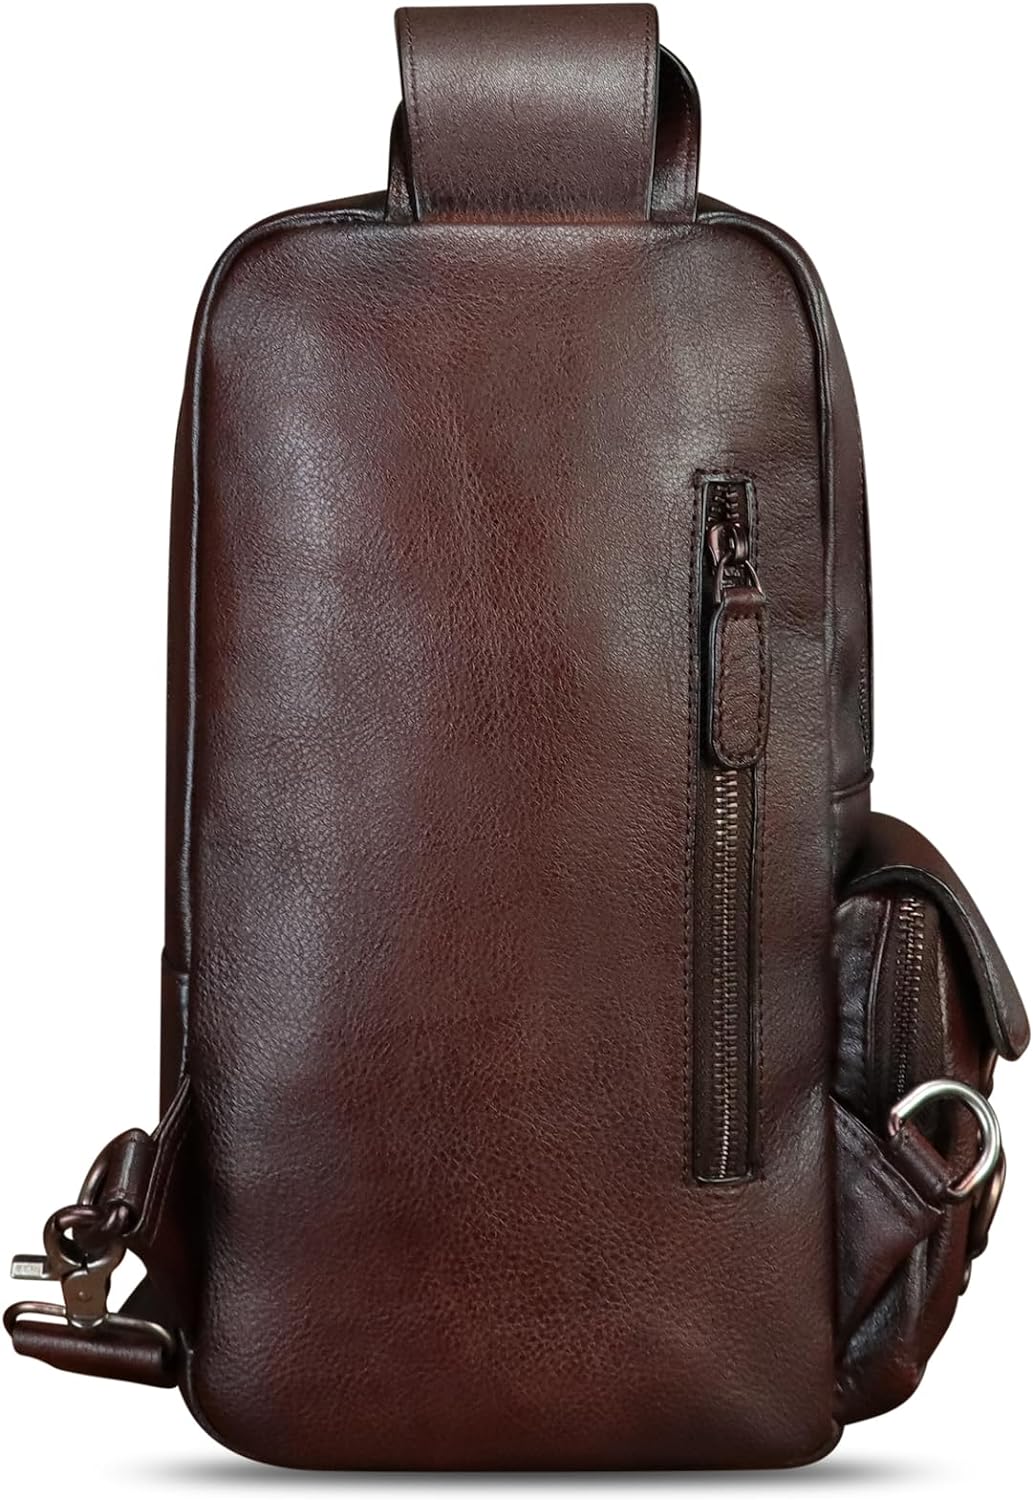 LRTO Genuine Leather Sling Bag for Men Crossbody Sling Backpack